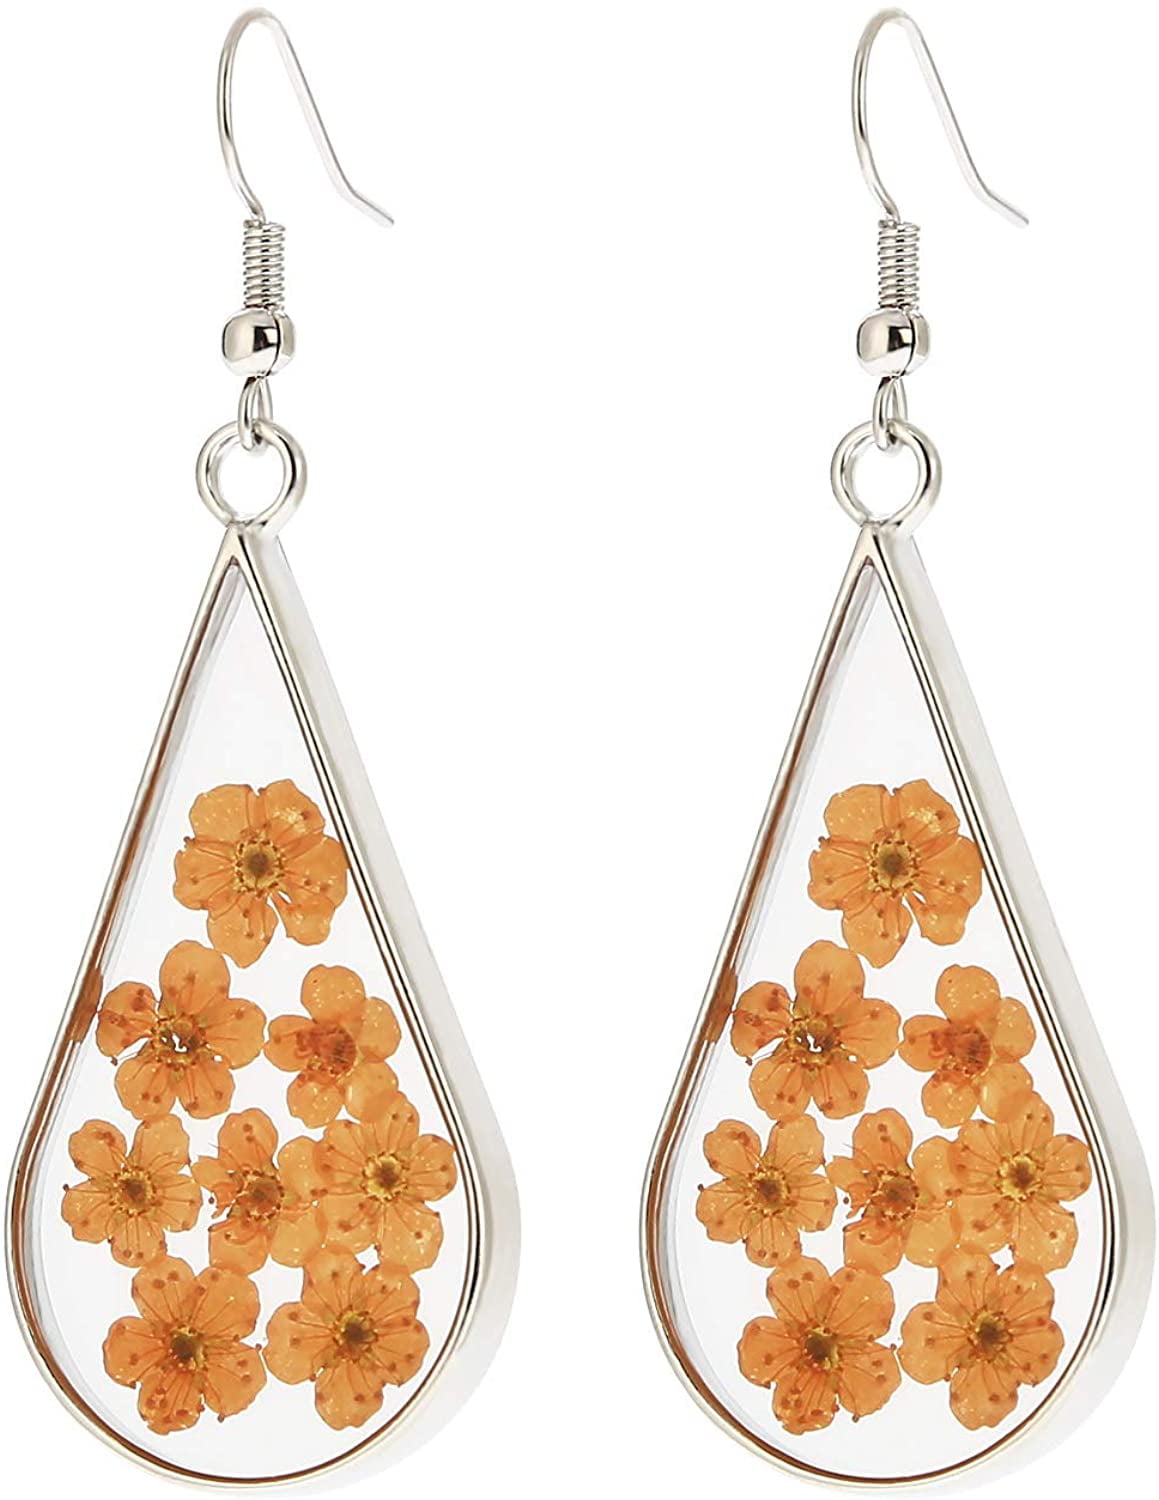 BaubleStar Pressed Flower Teardrop Earrings Dry Flowers Drop Dangle Fashion Jewelry